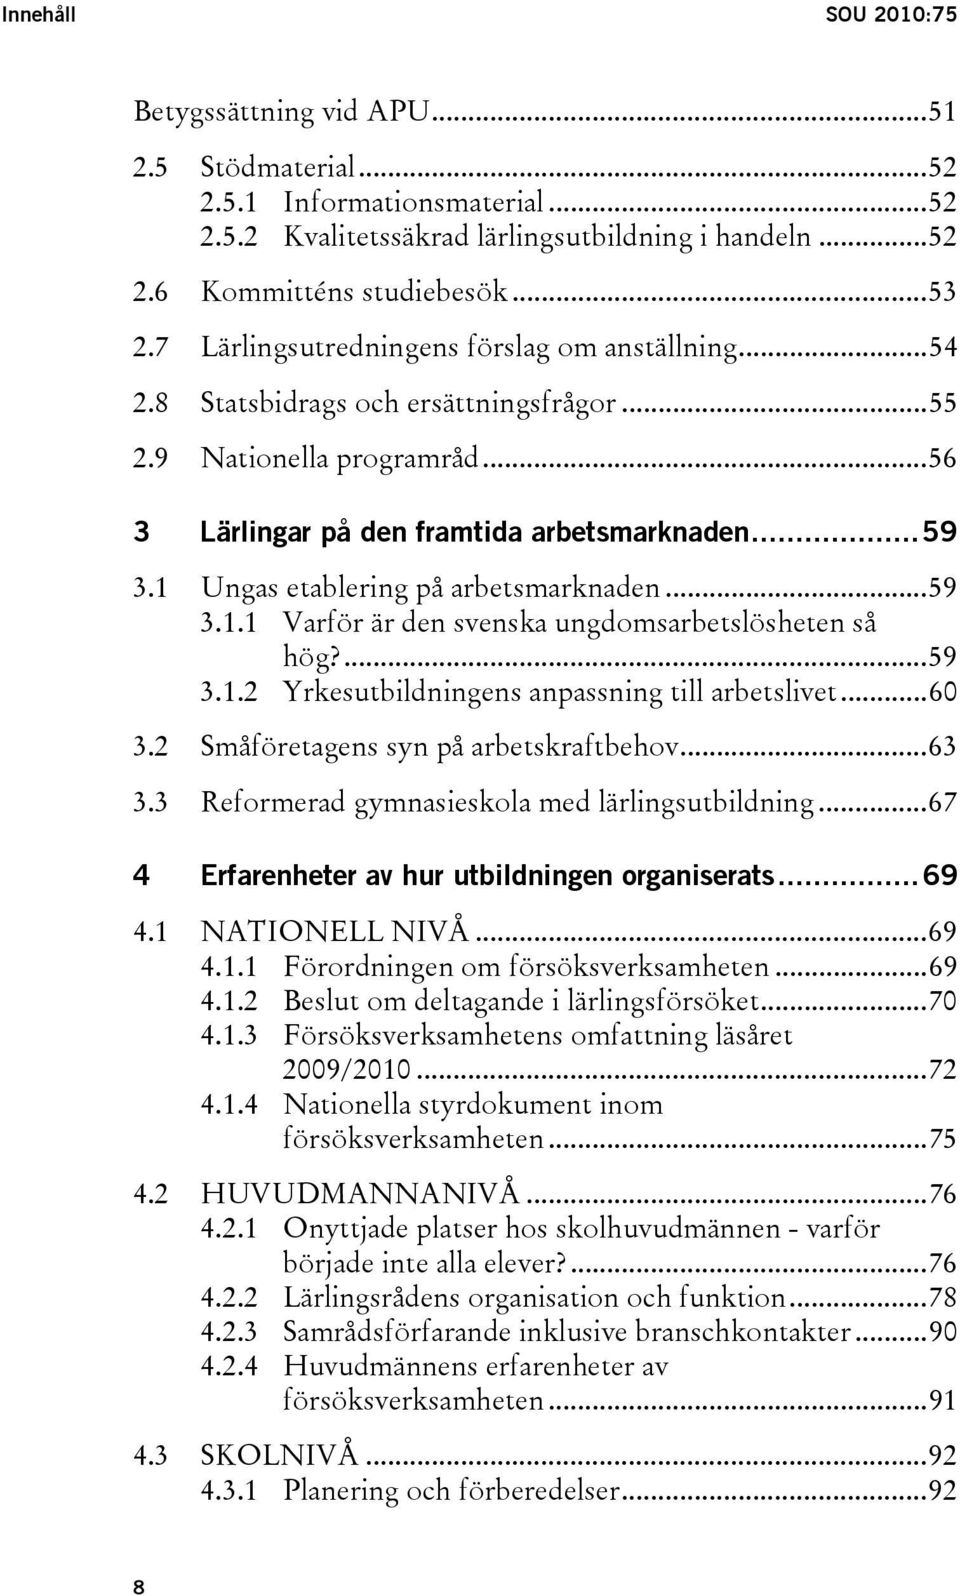 1 Ungas etablering på arbetsmarknaden...59 3.1.1 Varför är den svenska ungdomsarbetslösheten så hög?...59 3.1.2 Yrkesutbildningens anpassning till arbetslivet...60 3.